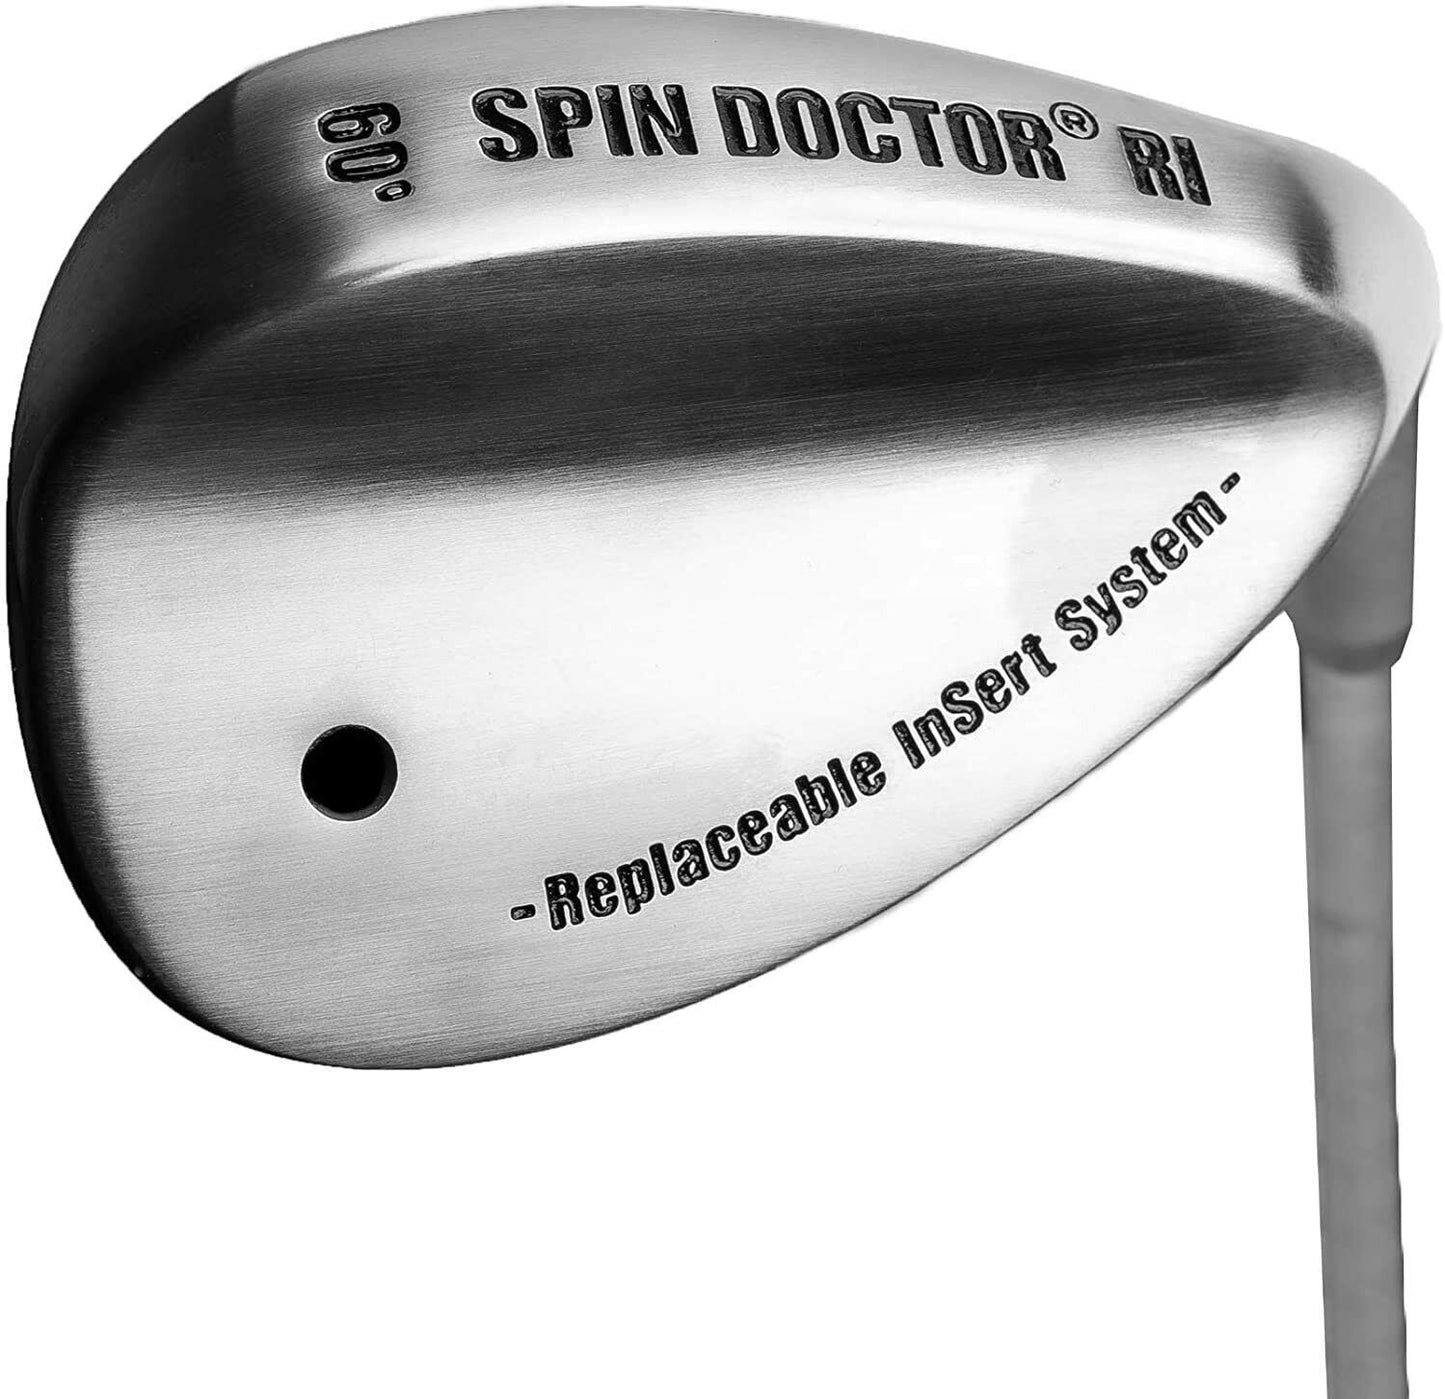 لعبة Spin Doctor Golf Demo Wedge، رمل، لوب 52 درجة، 56 درجة، 60 درجة - يمين ويسار 